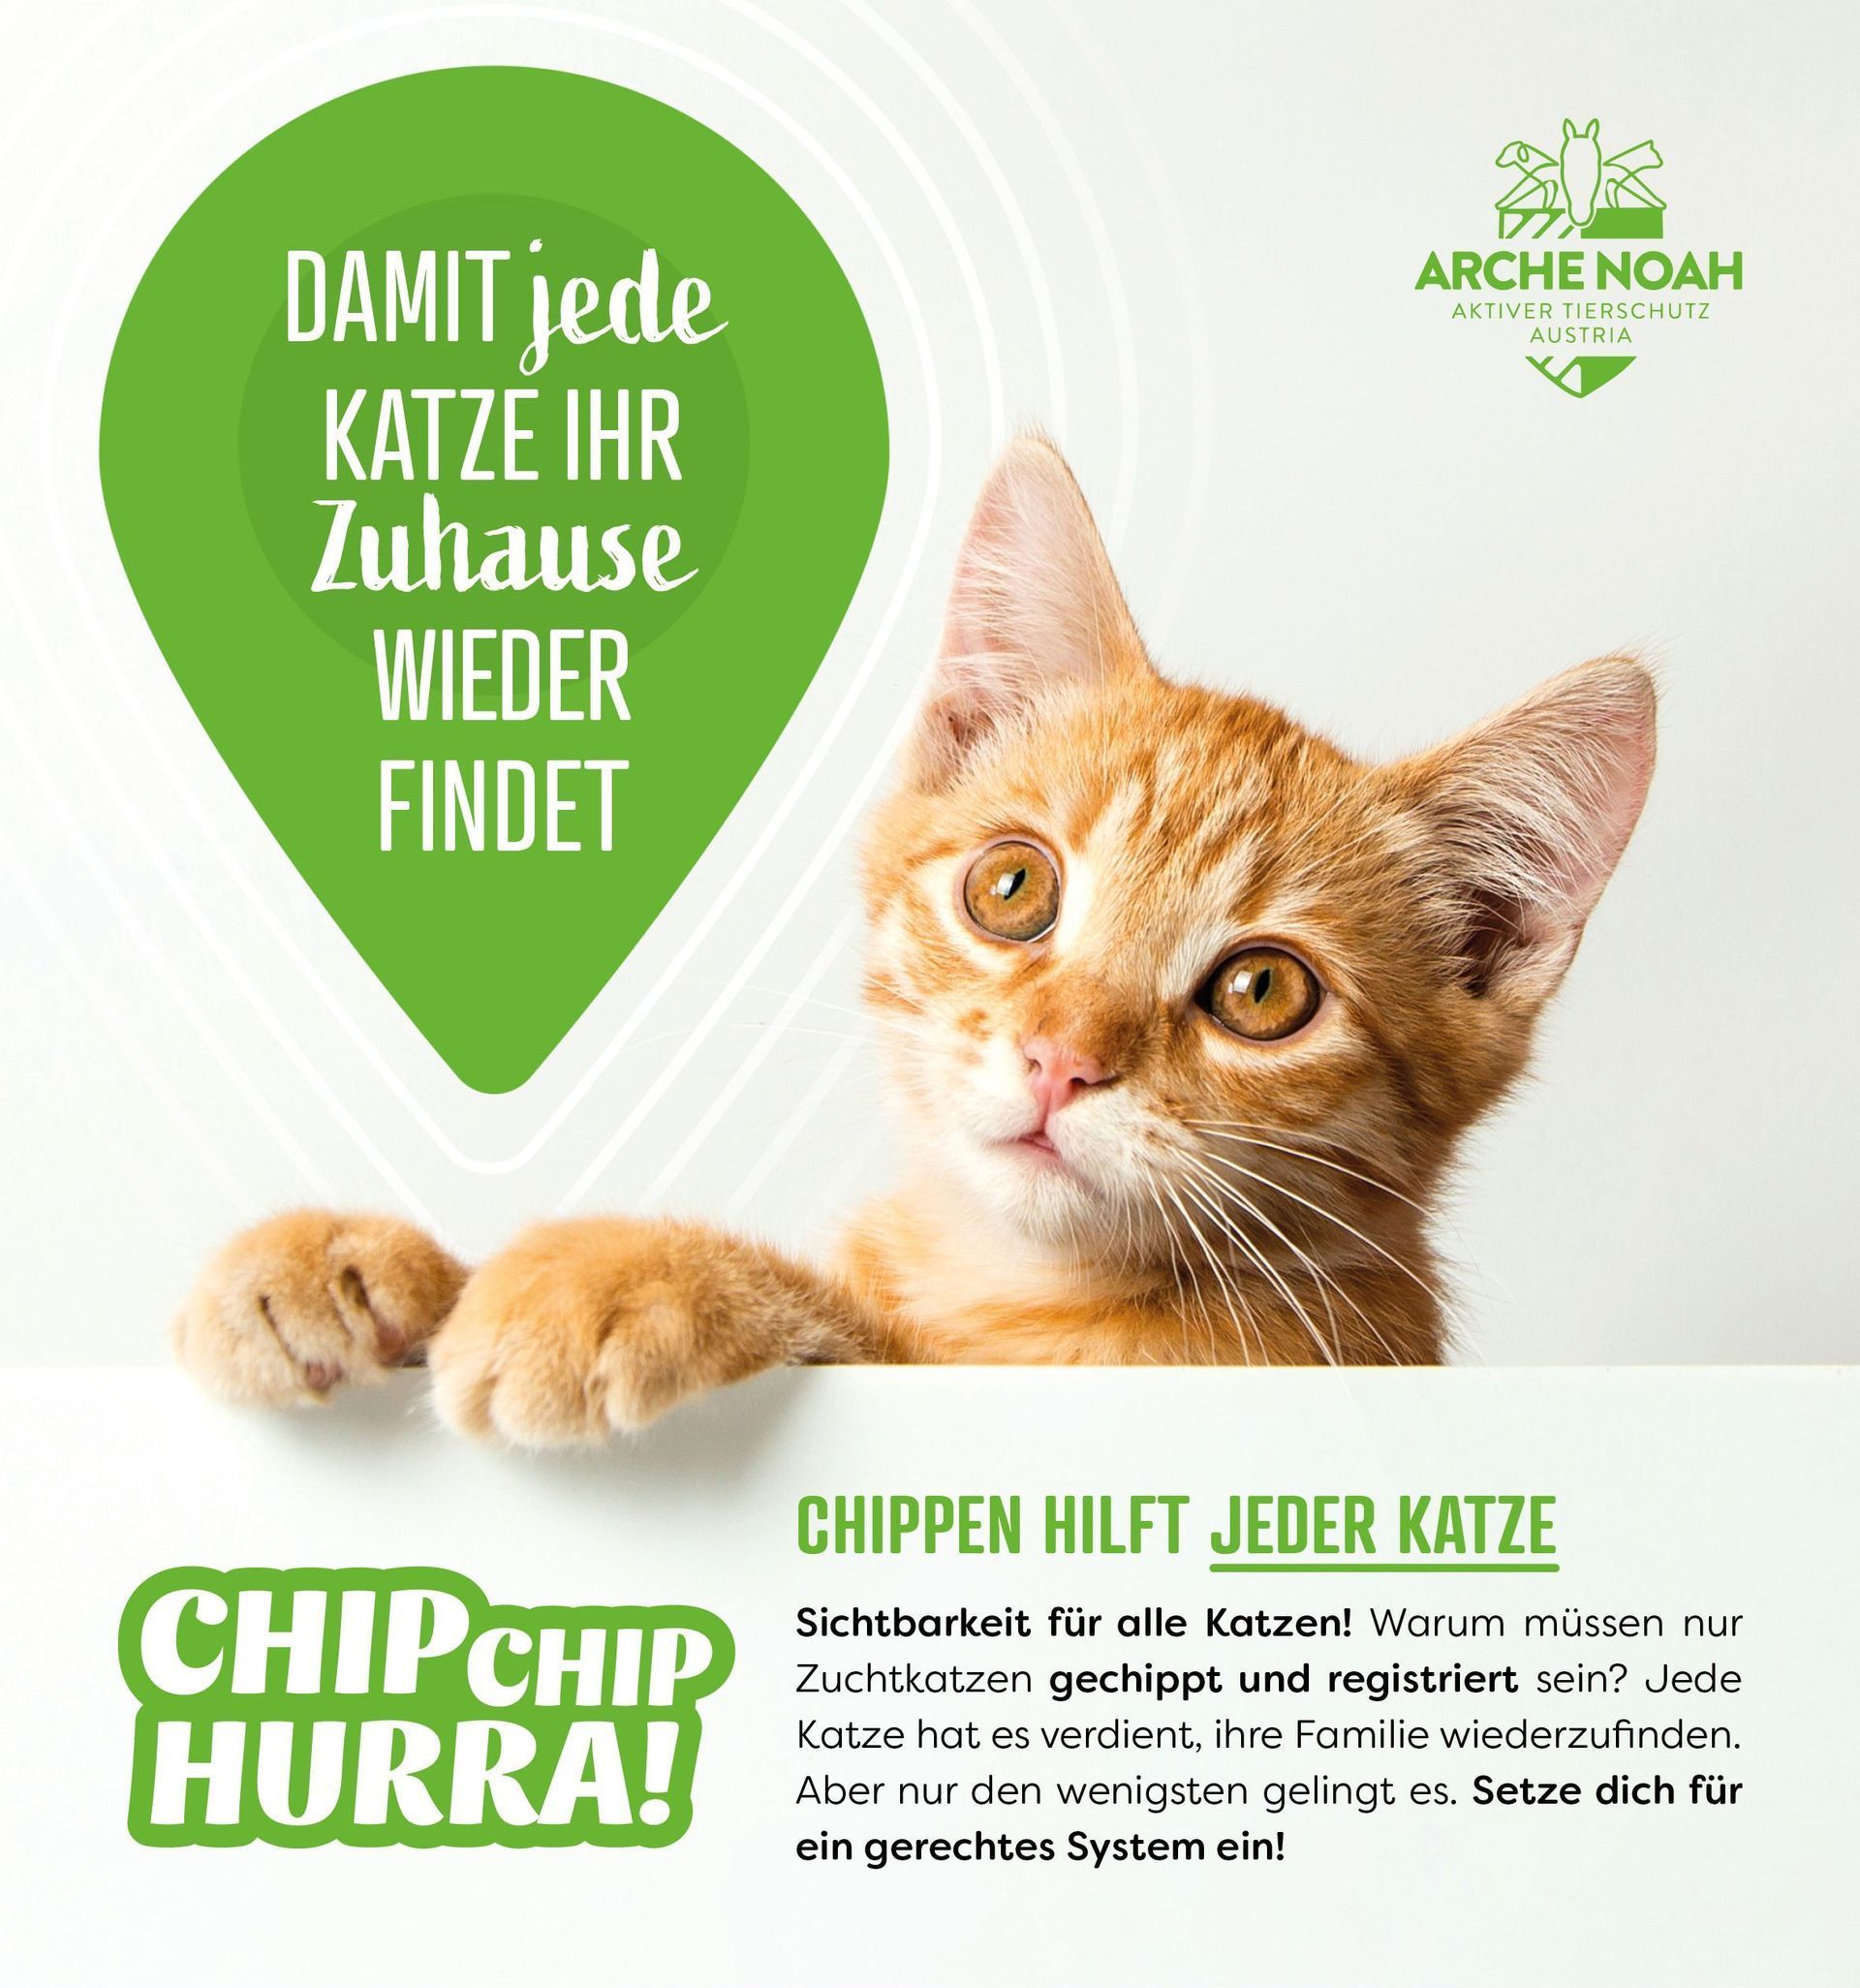 Chippen hilft jeder Katze, Chip Chip Hurra, Petition, Aktiver Tierschutz Austria, Arche Noah, Gefunden und doch verloren, Sichtbarkeit für alle Katzen, jede Katze hat es verdient, ihre Familie wiederzufinden, 